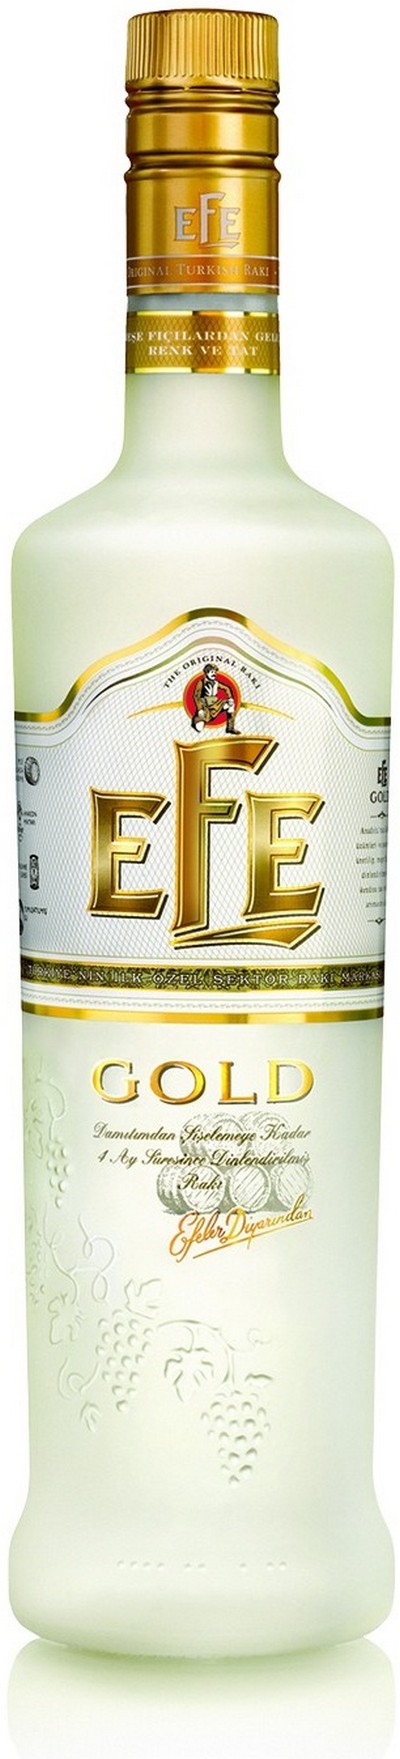 efe-gold-2016